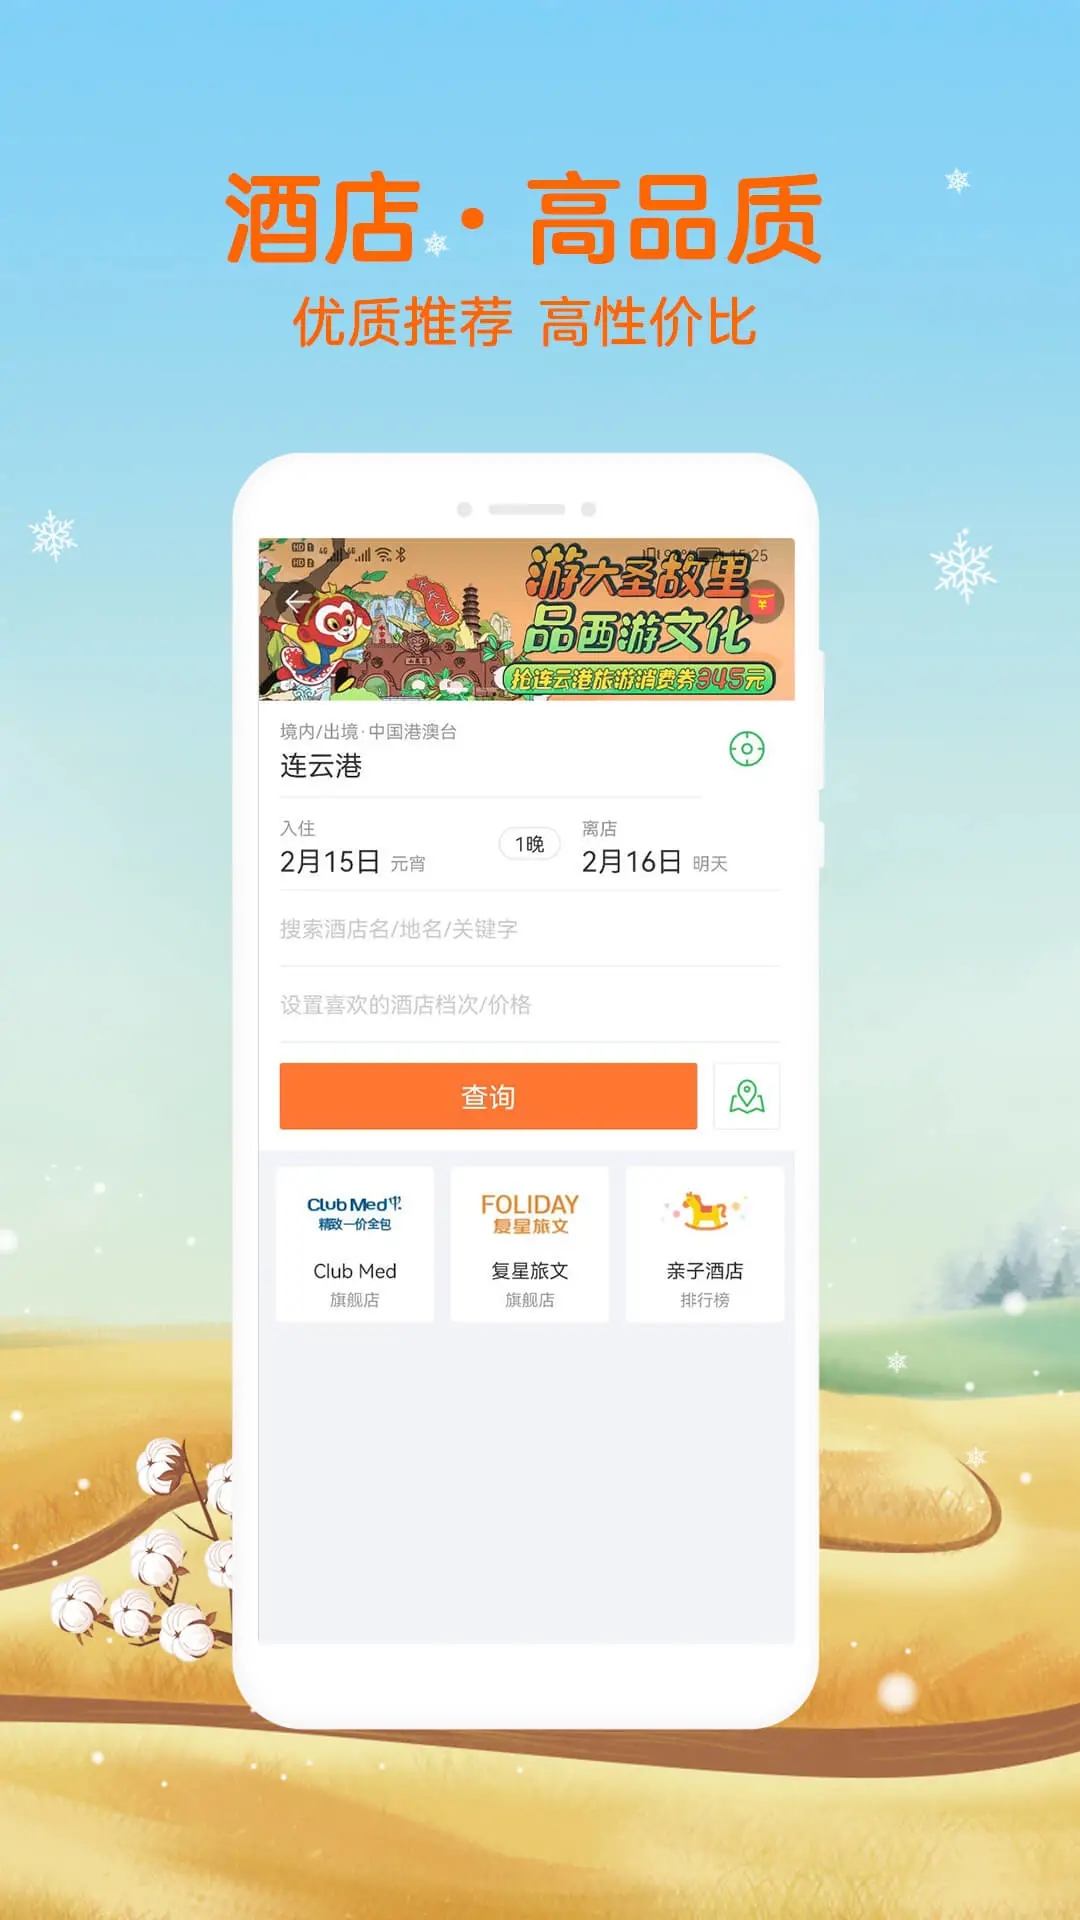 途牛旅游app下载安装最新版下载